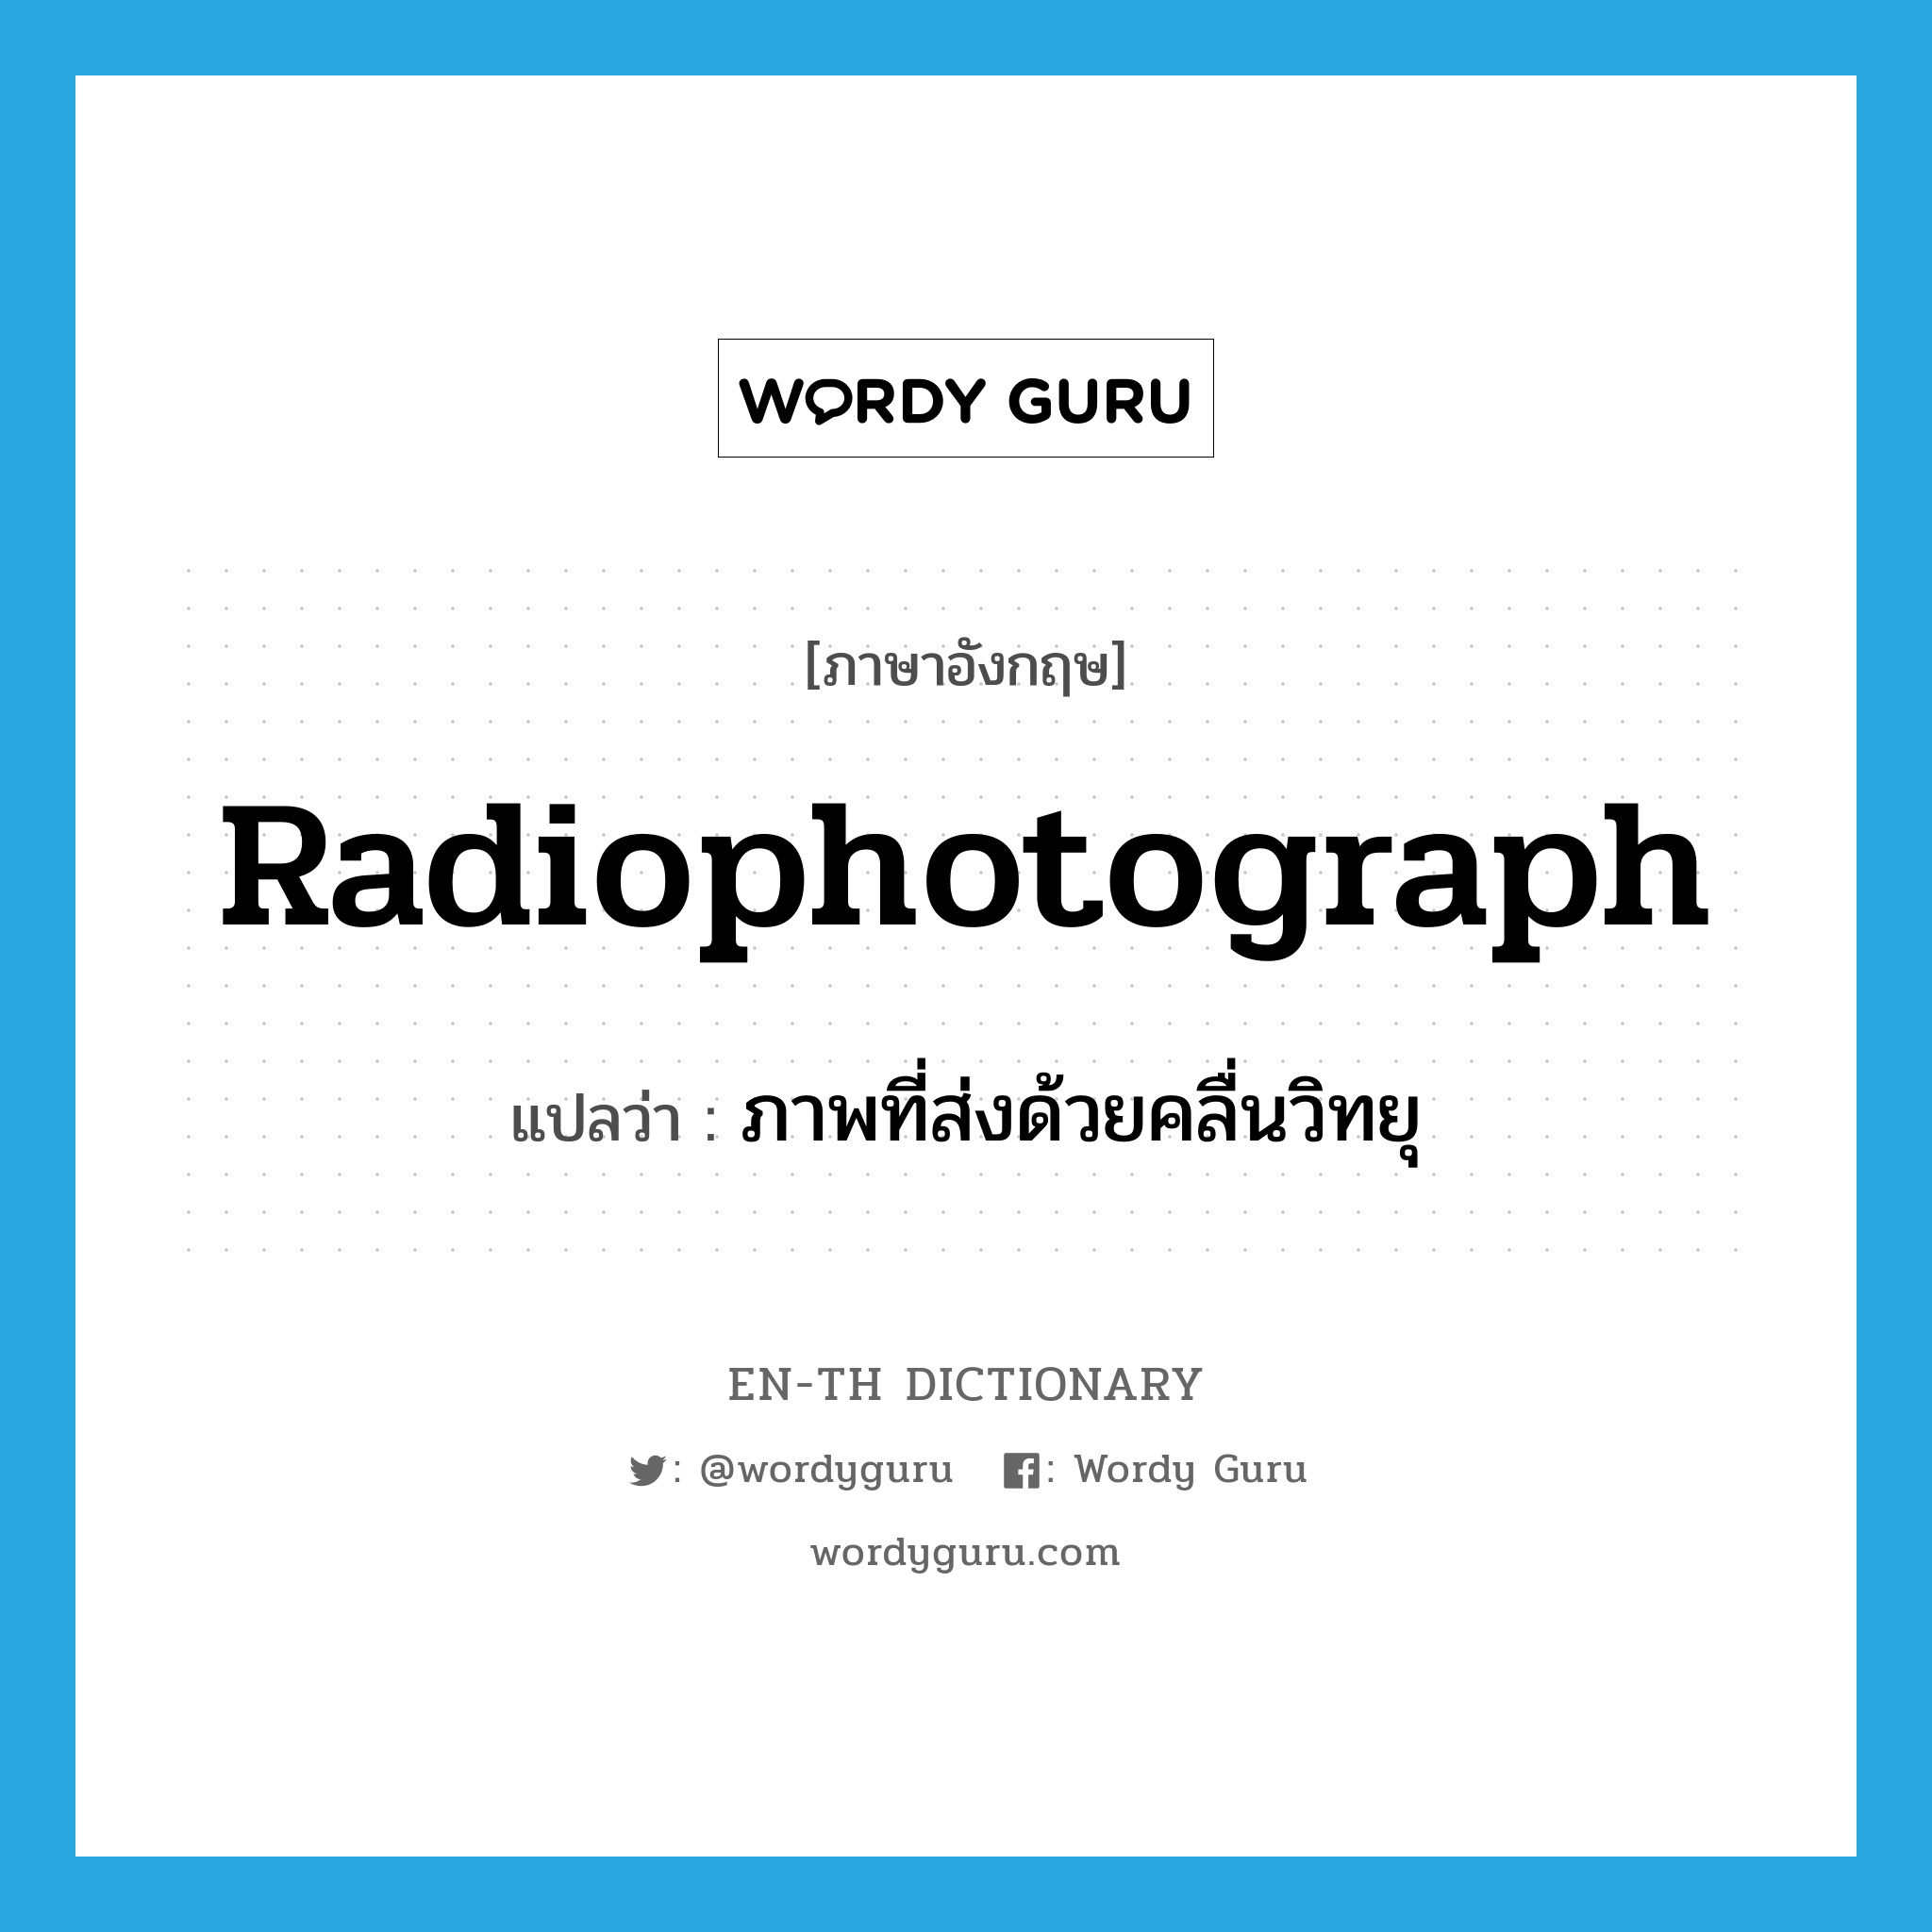 radiophotograph แปลว่า?, คำศัพท์ภาษาอังกฤษ radiophotograph แปลว่า ภาพที่ส่งด้วยคลื่นวิทยุ ประเภท N หมวด N